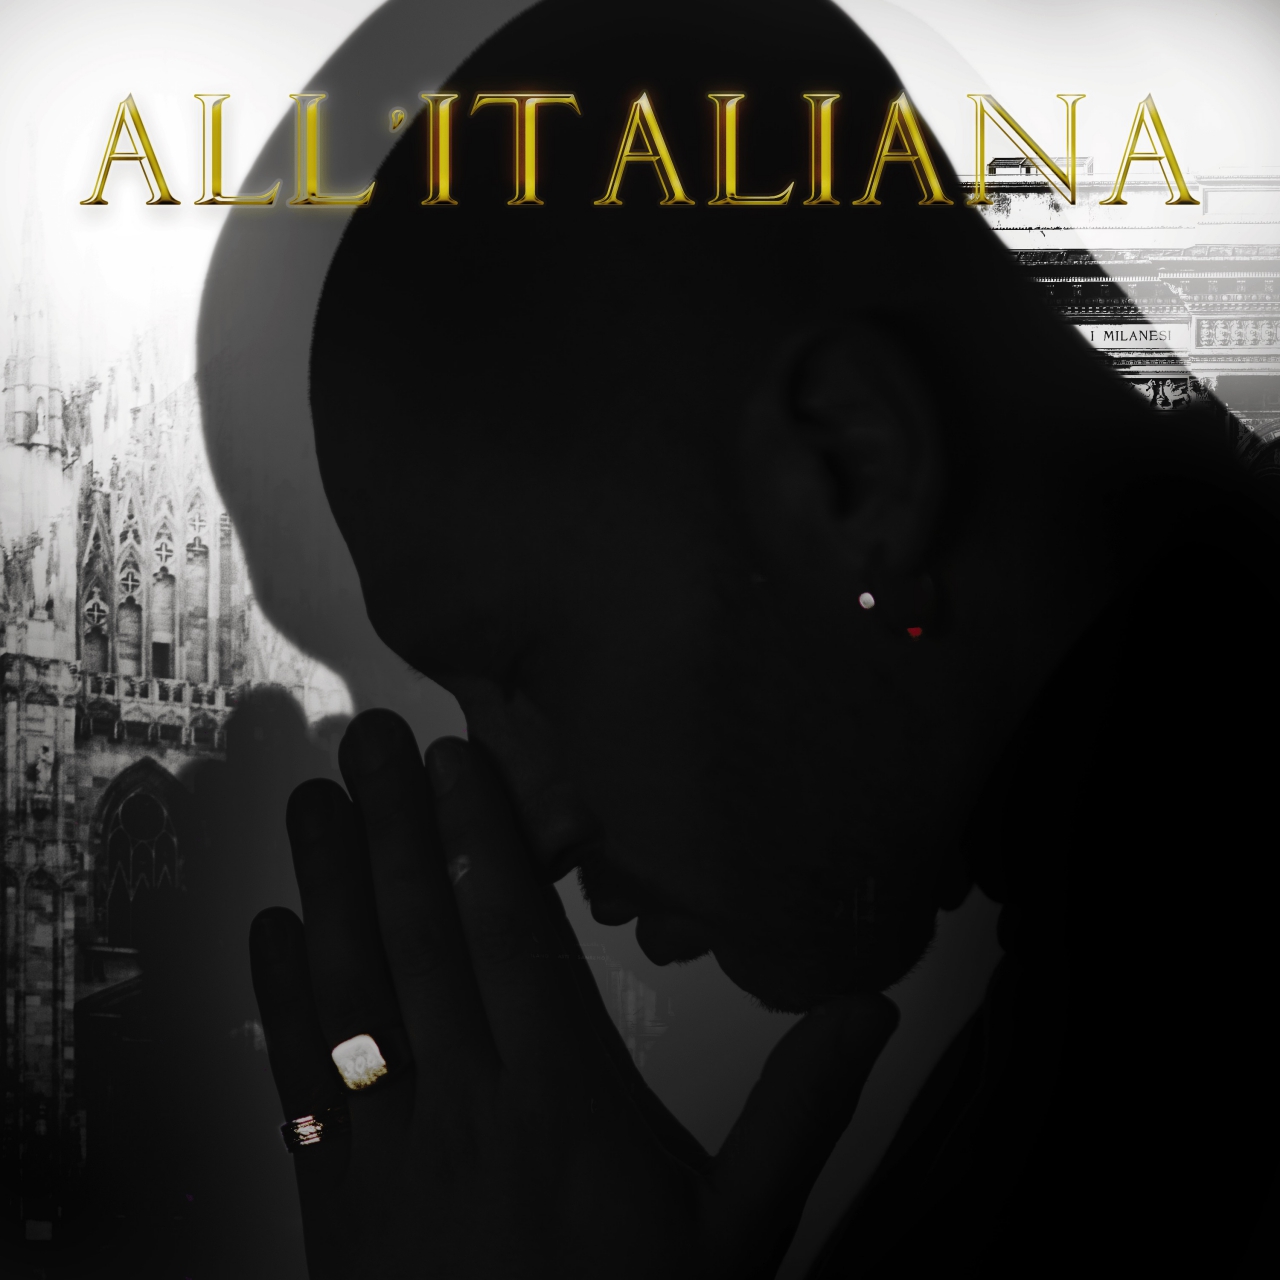 CLARK P. - "All'italiana" è il nuovo singolo dell'artista torinese